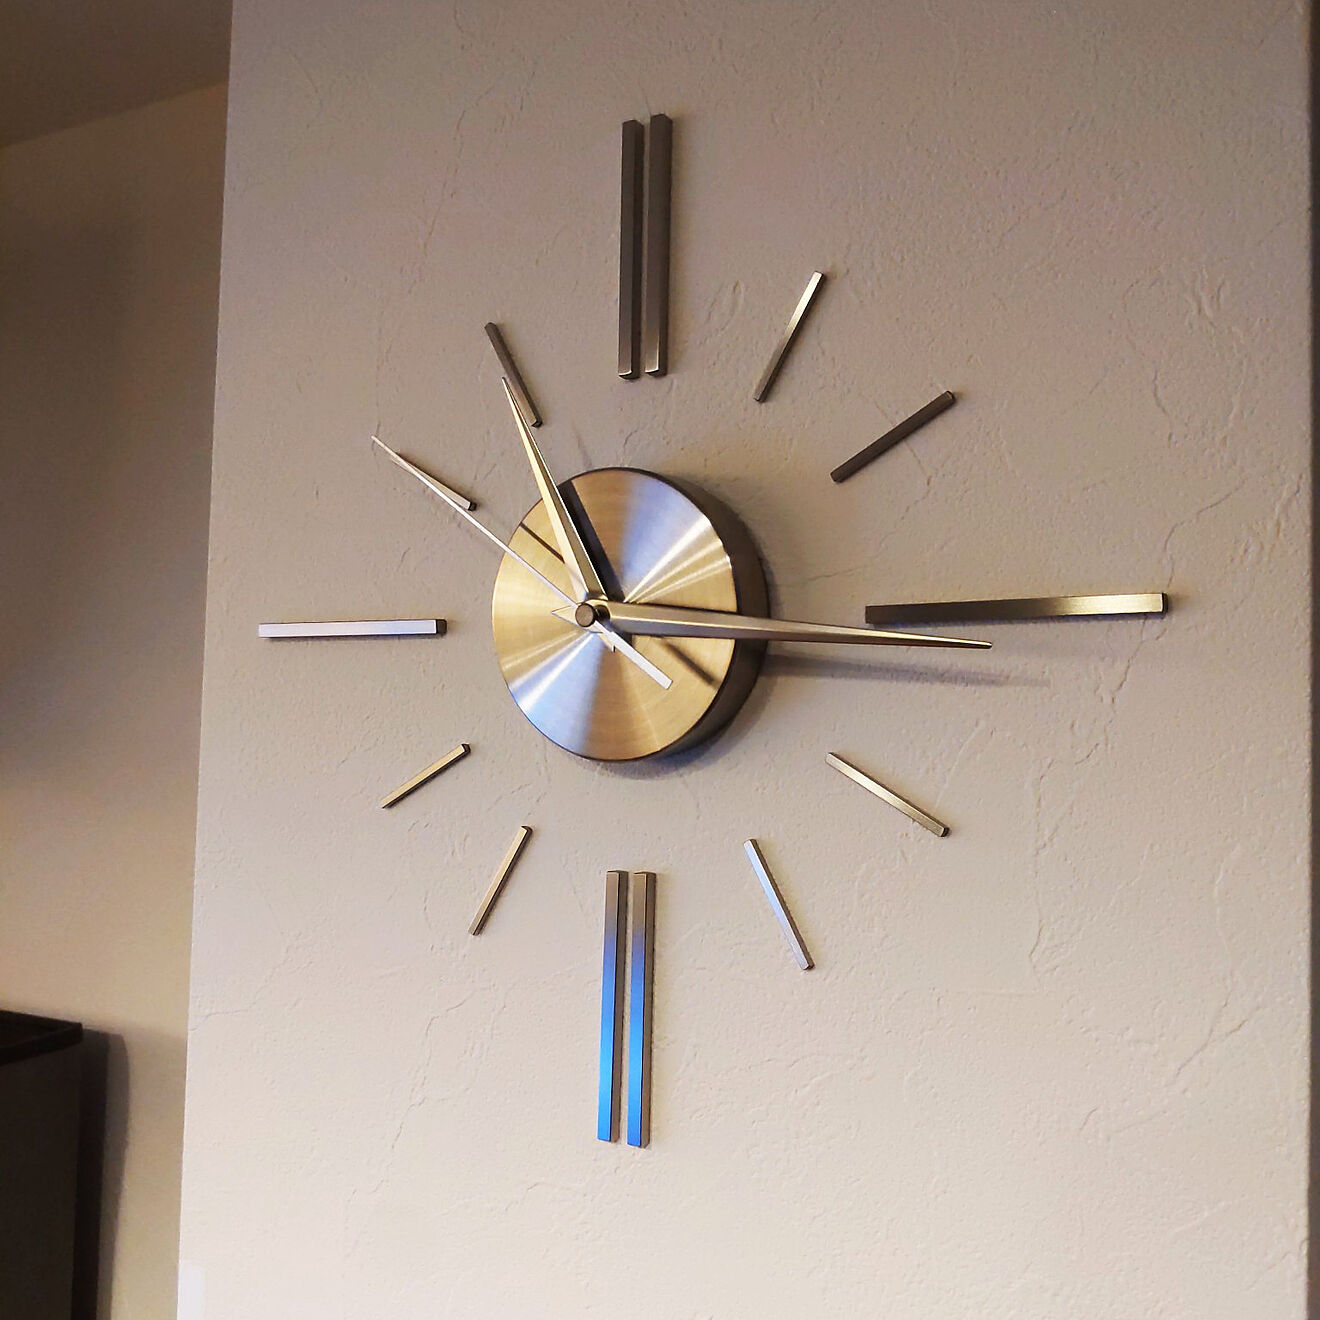 高級壁掛け時計BLICIA ST6 | お客様写真【2021】 | 壁掛け時計, 壁掛け時計 おしゃれ, 掛け時計